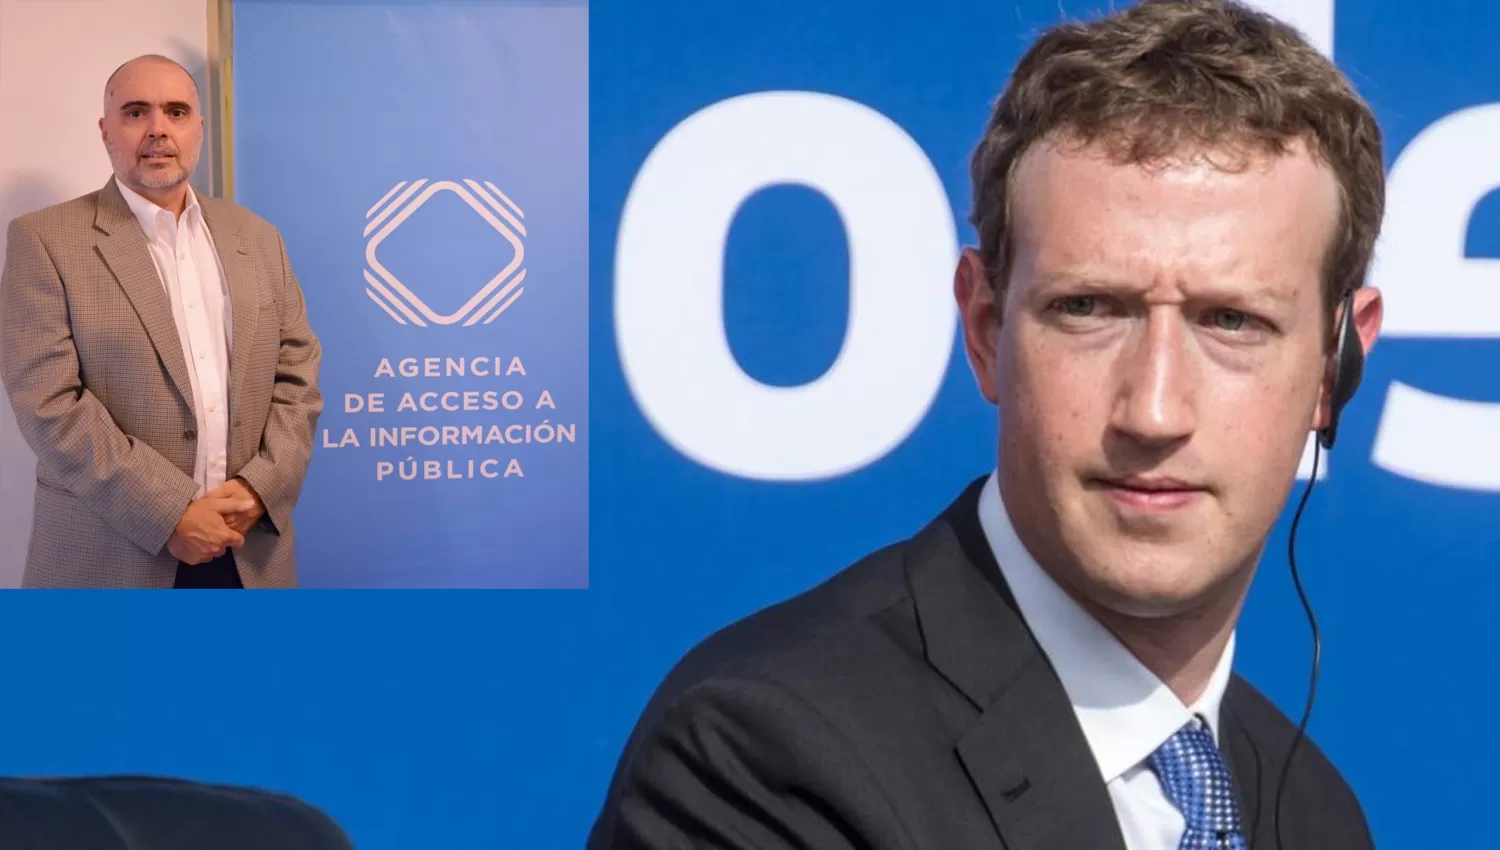 Alberto Bertoni, Director de la Agencia Argentina de Información Pública (izquierda) y Mark Zuckerberg, propietario de Facebook (derecha).